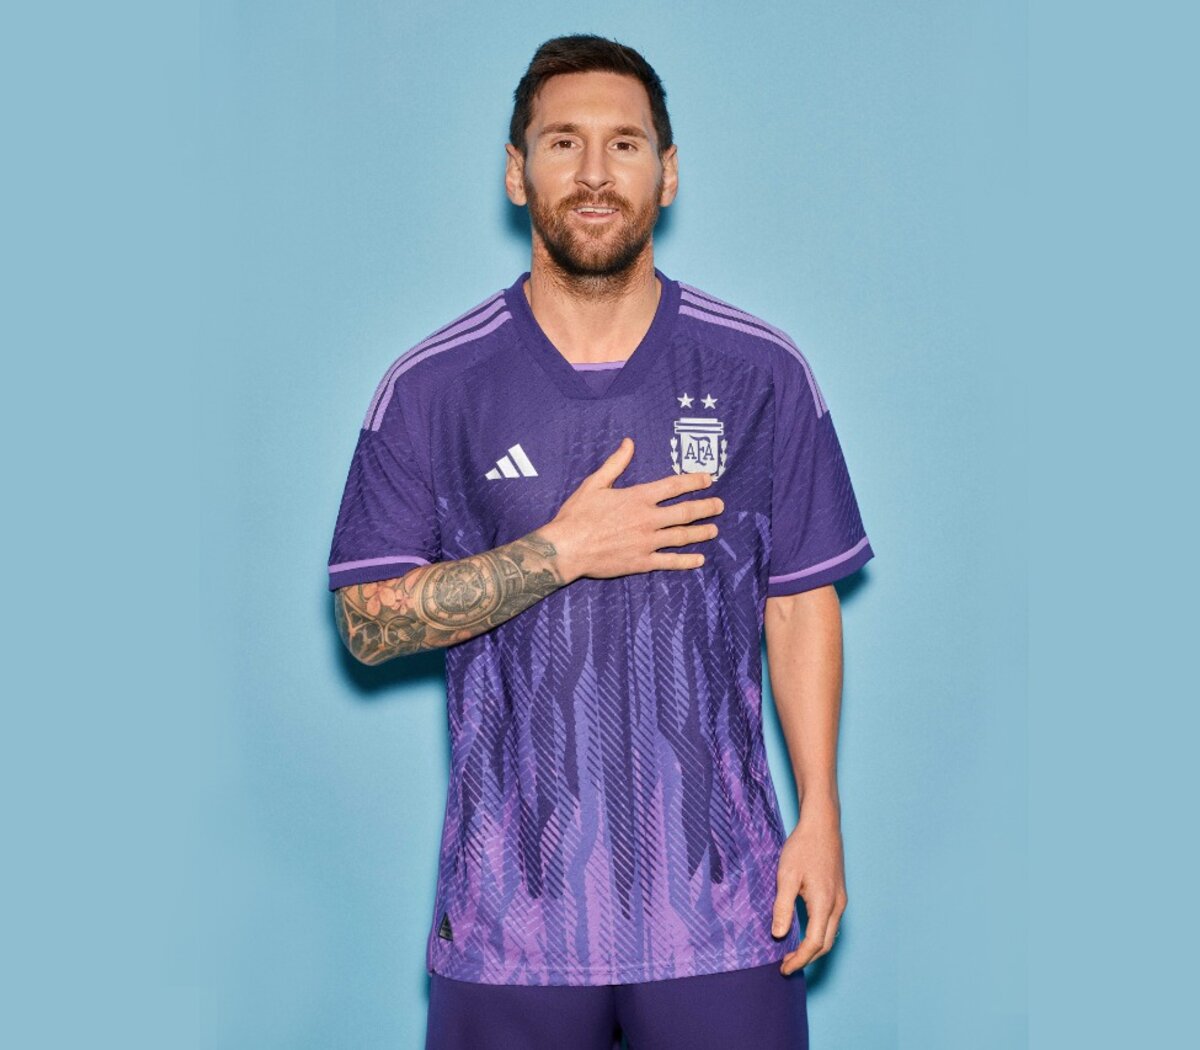 La camiseta argentina perspectiva de género | En el Mundial de Qatar será la primera vez que la Selección vista un modelo de color violeta | Página|12